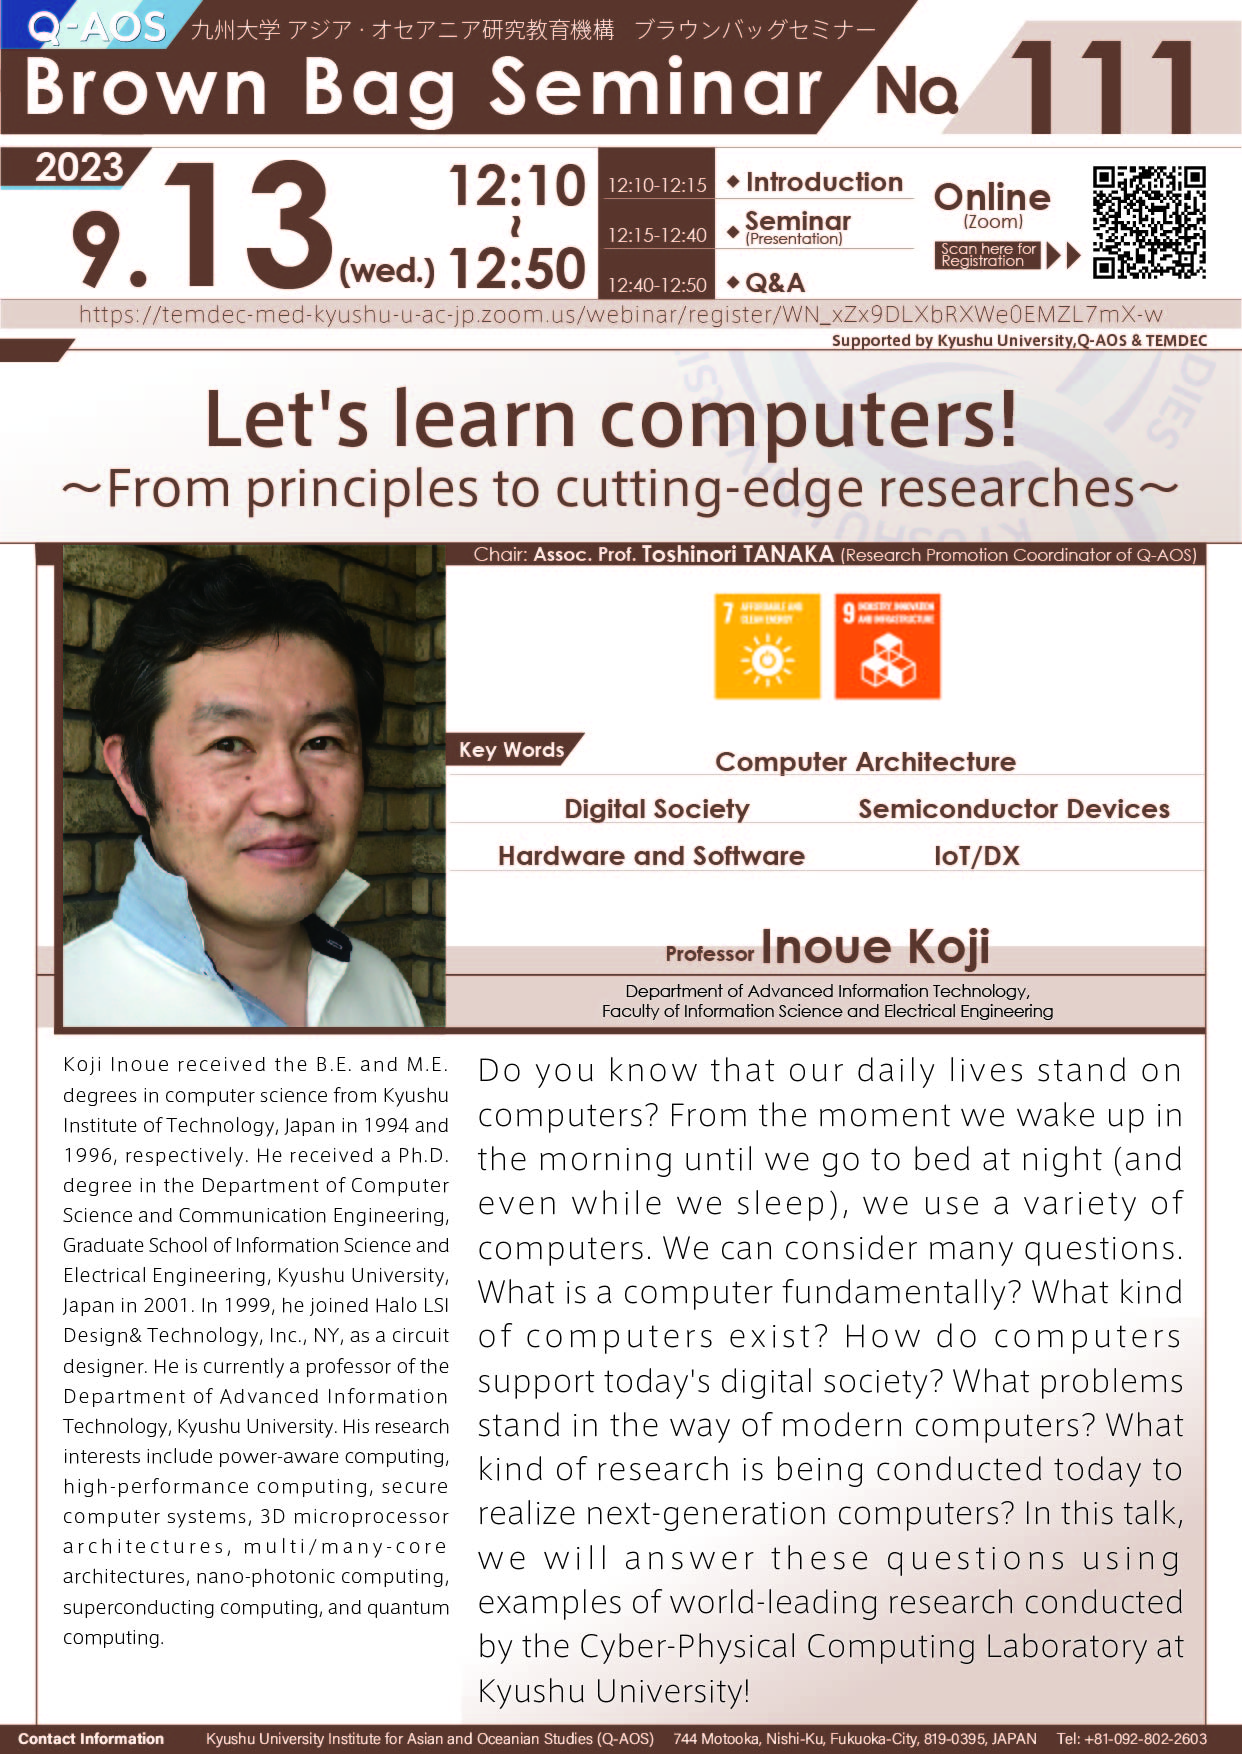 アイキャッチ画像：Q-AOS Brown Bag Seminar Series The 111th Seminar “Let's learn computers! 〜From principles to cutting-edge researches〜”